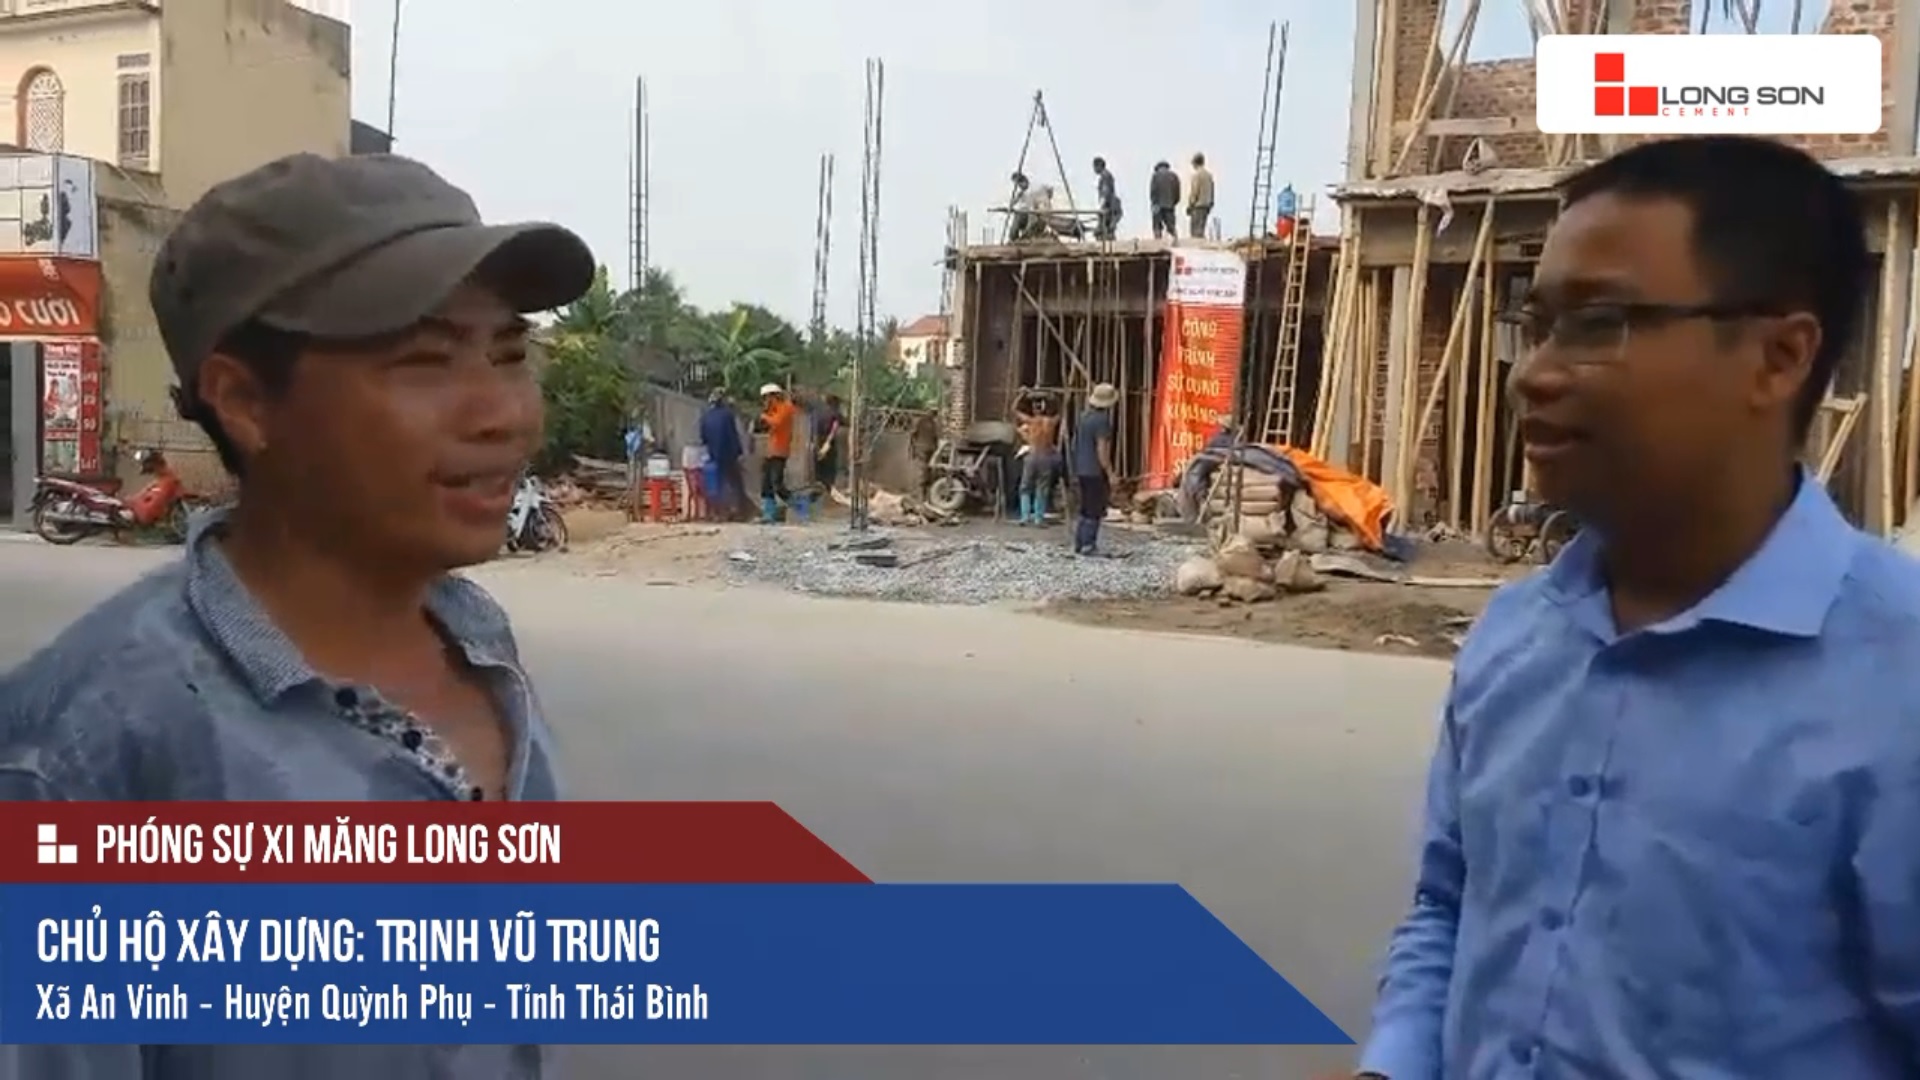 Phóng sự công trình sử dụng Xi măng Long Sơn tại Thái Bình 07.06.2018